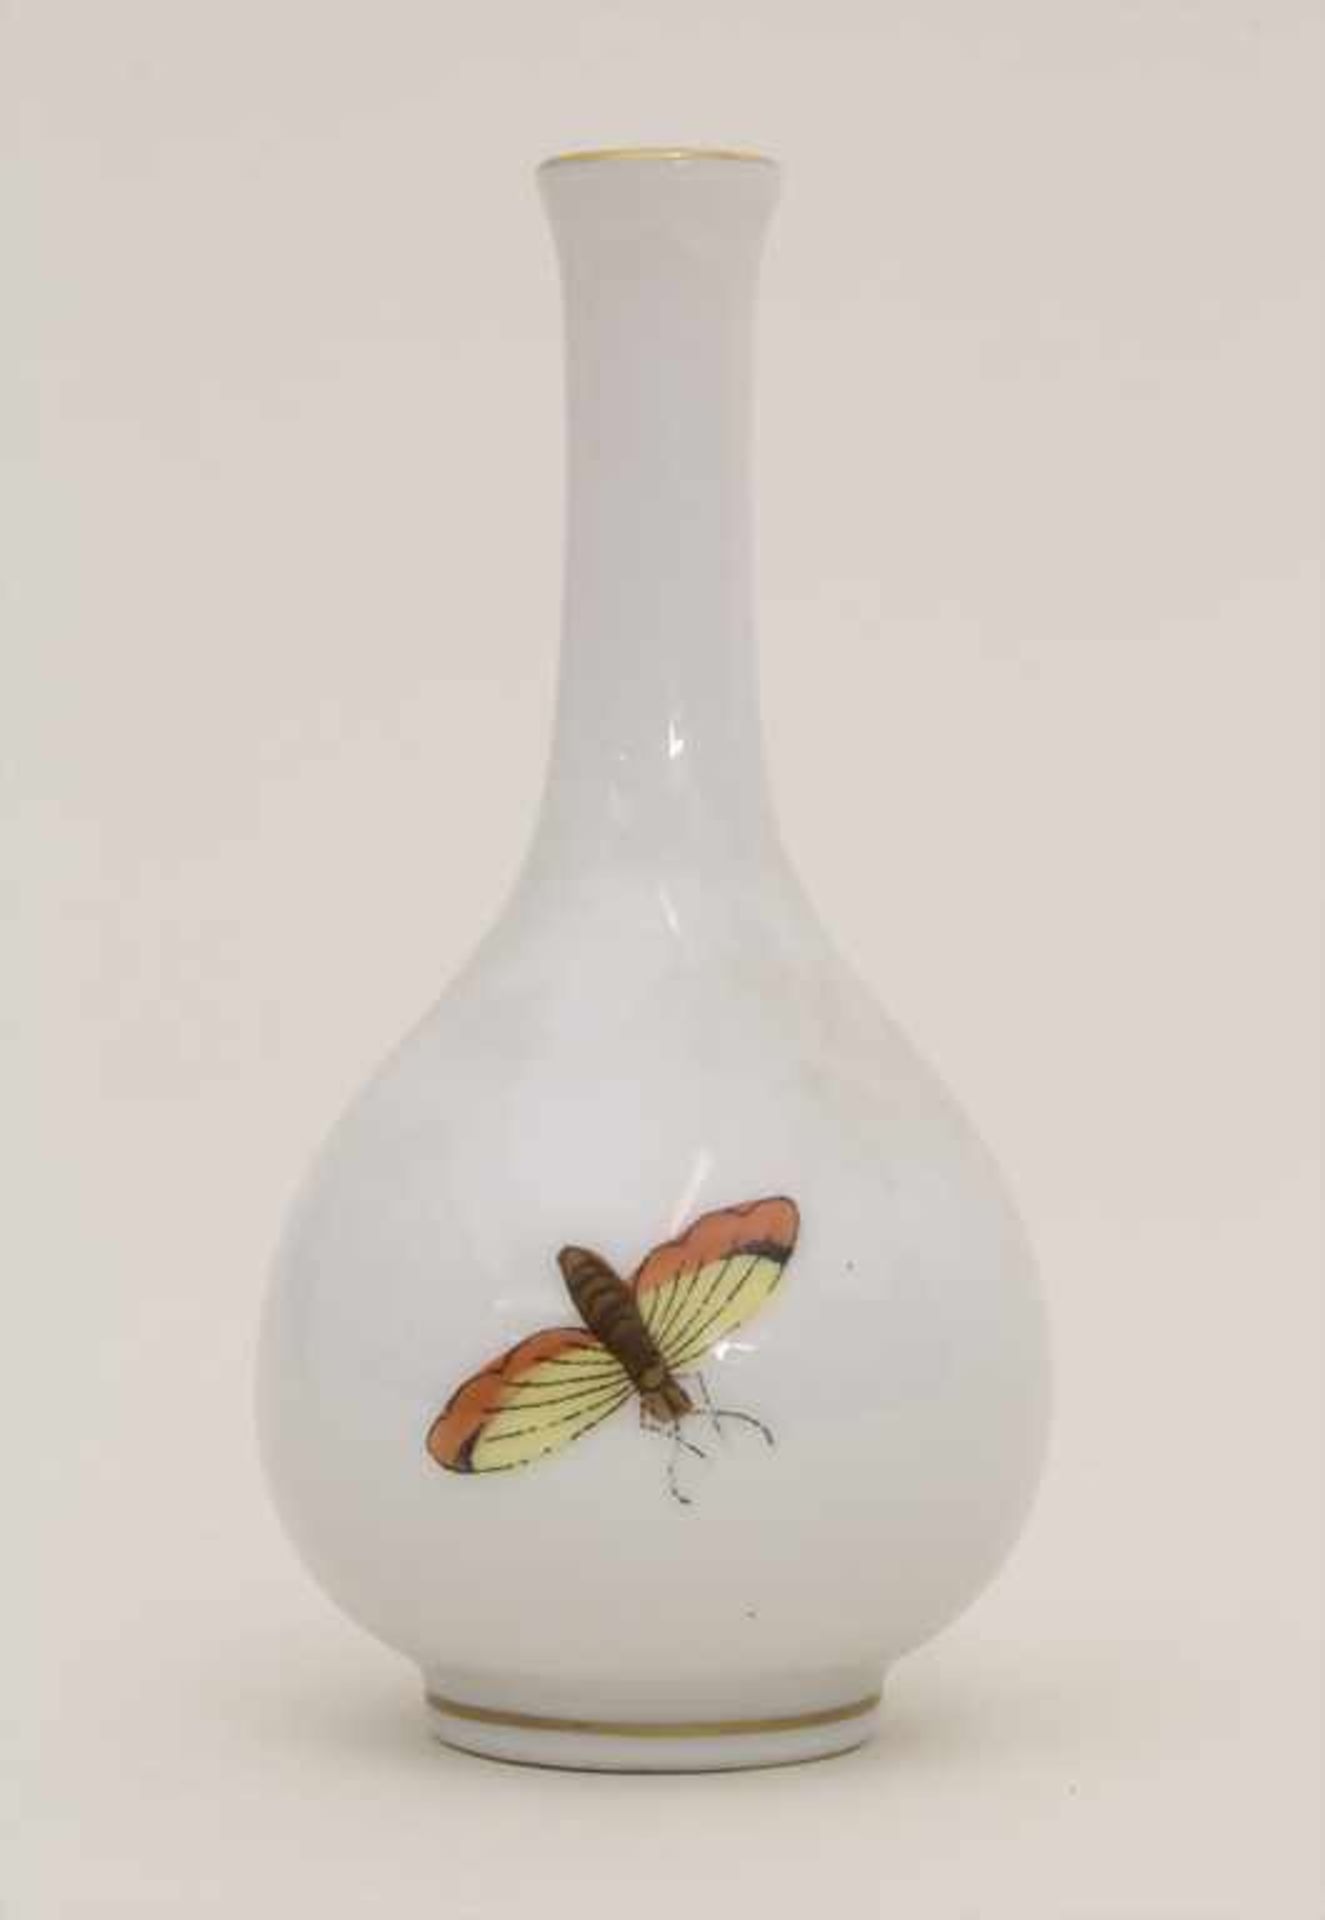 Miniatur Vase Rothschild / A miniature vase with birds, Herend, Mitte 20. Jh.Material: Porzellan, - Bild 2 aus 3